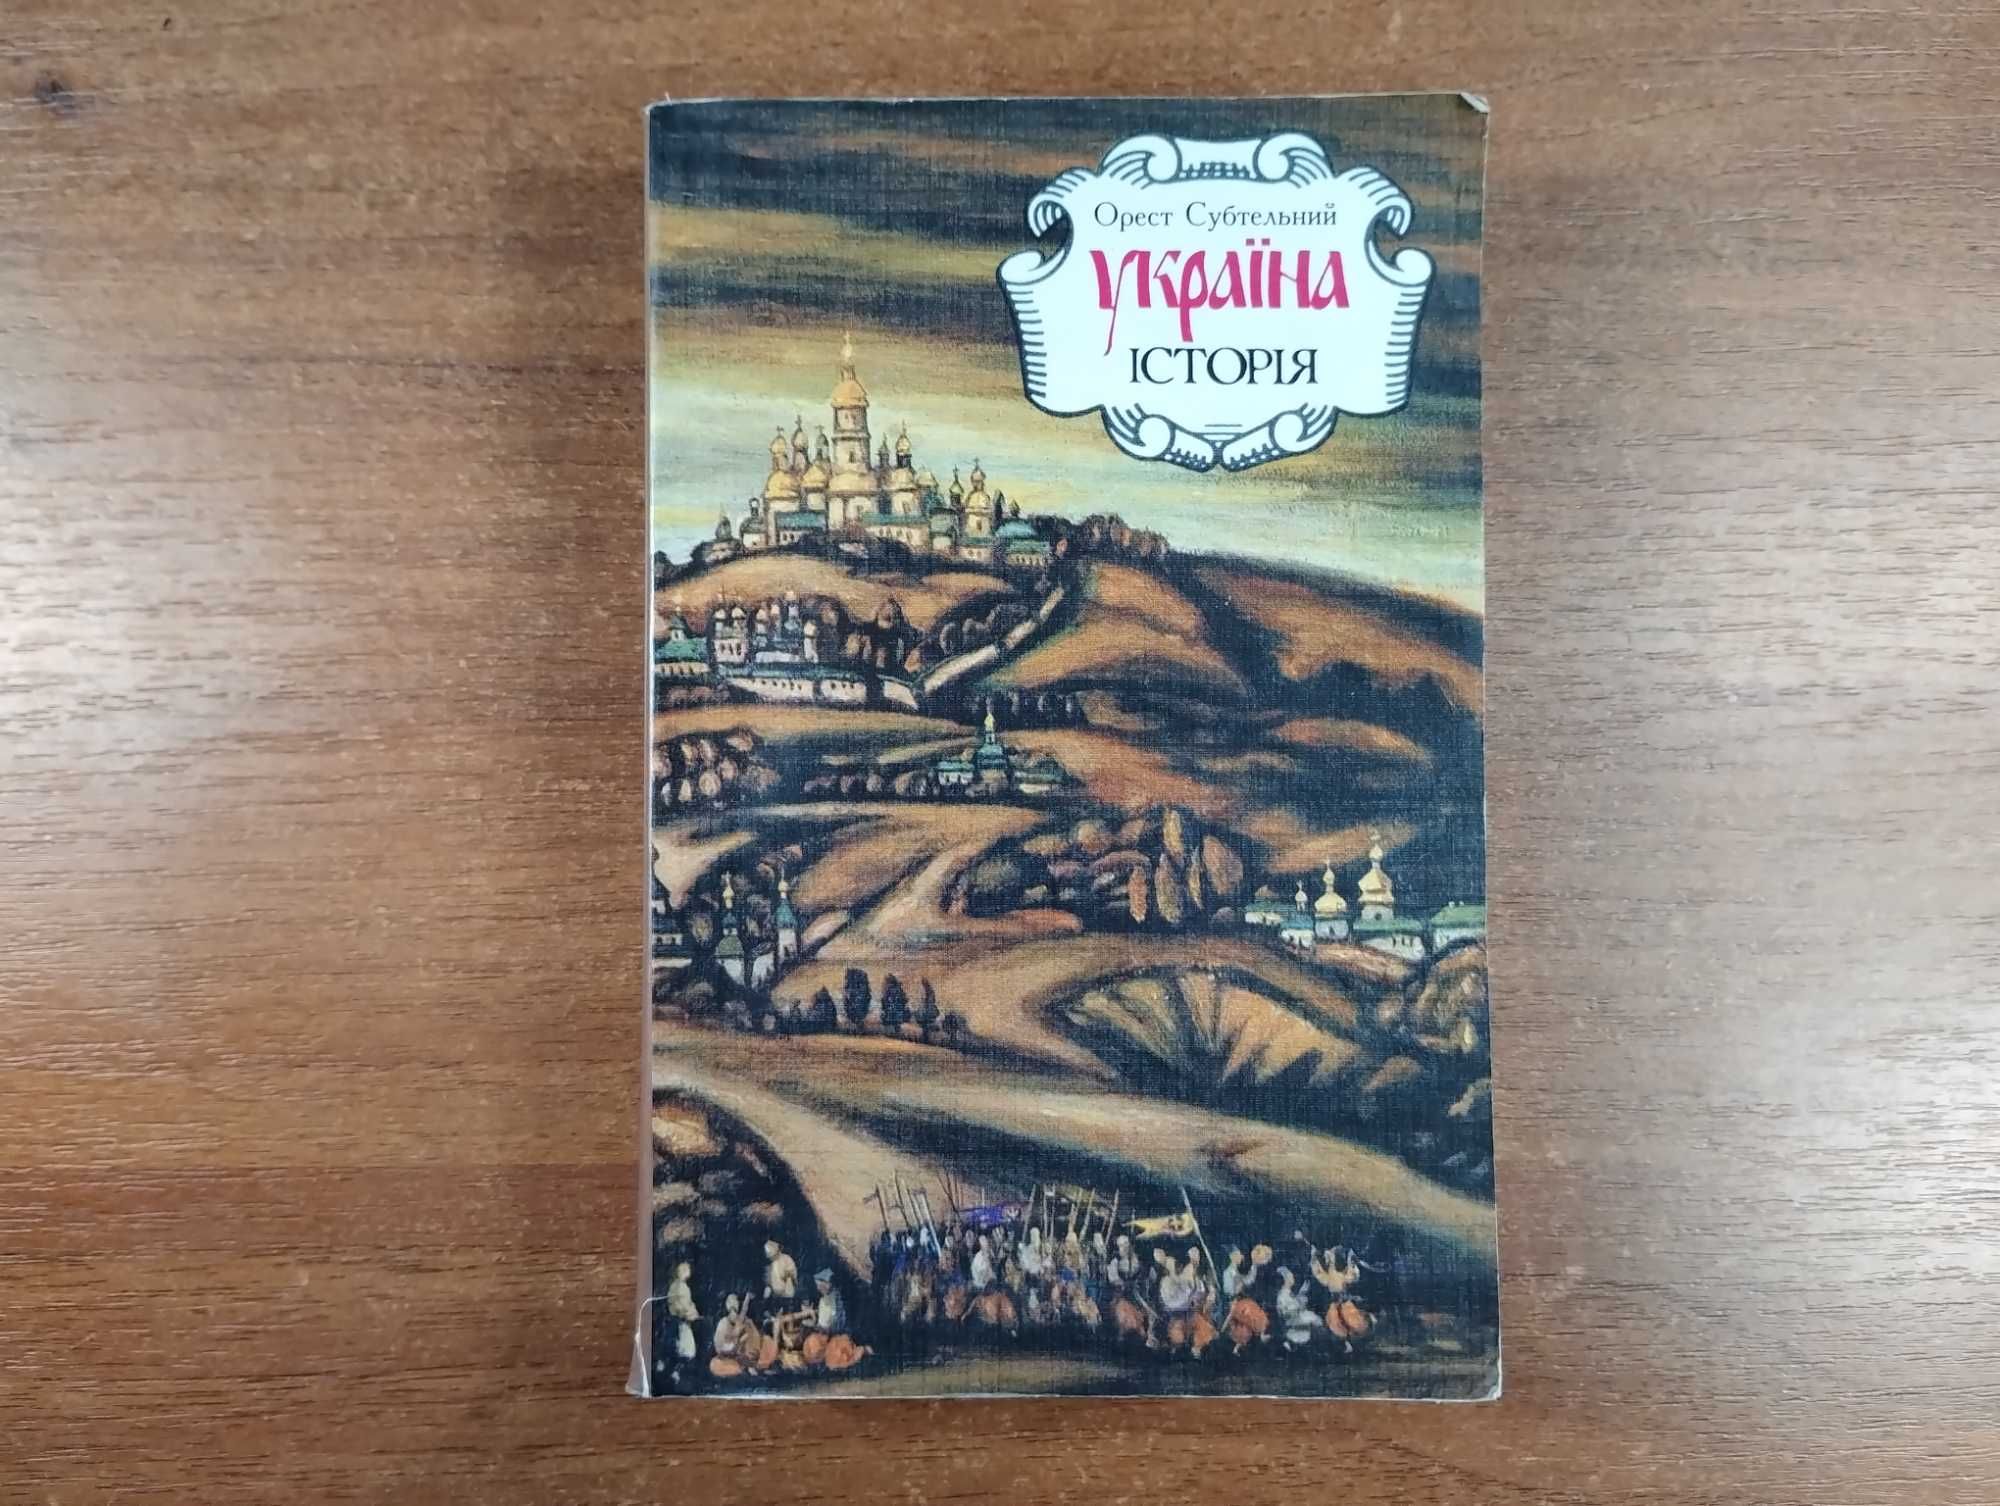 Орест Субтельний "Україна історія" (М'яка палітурка, 1993 р.)